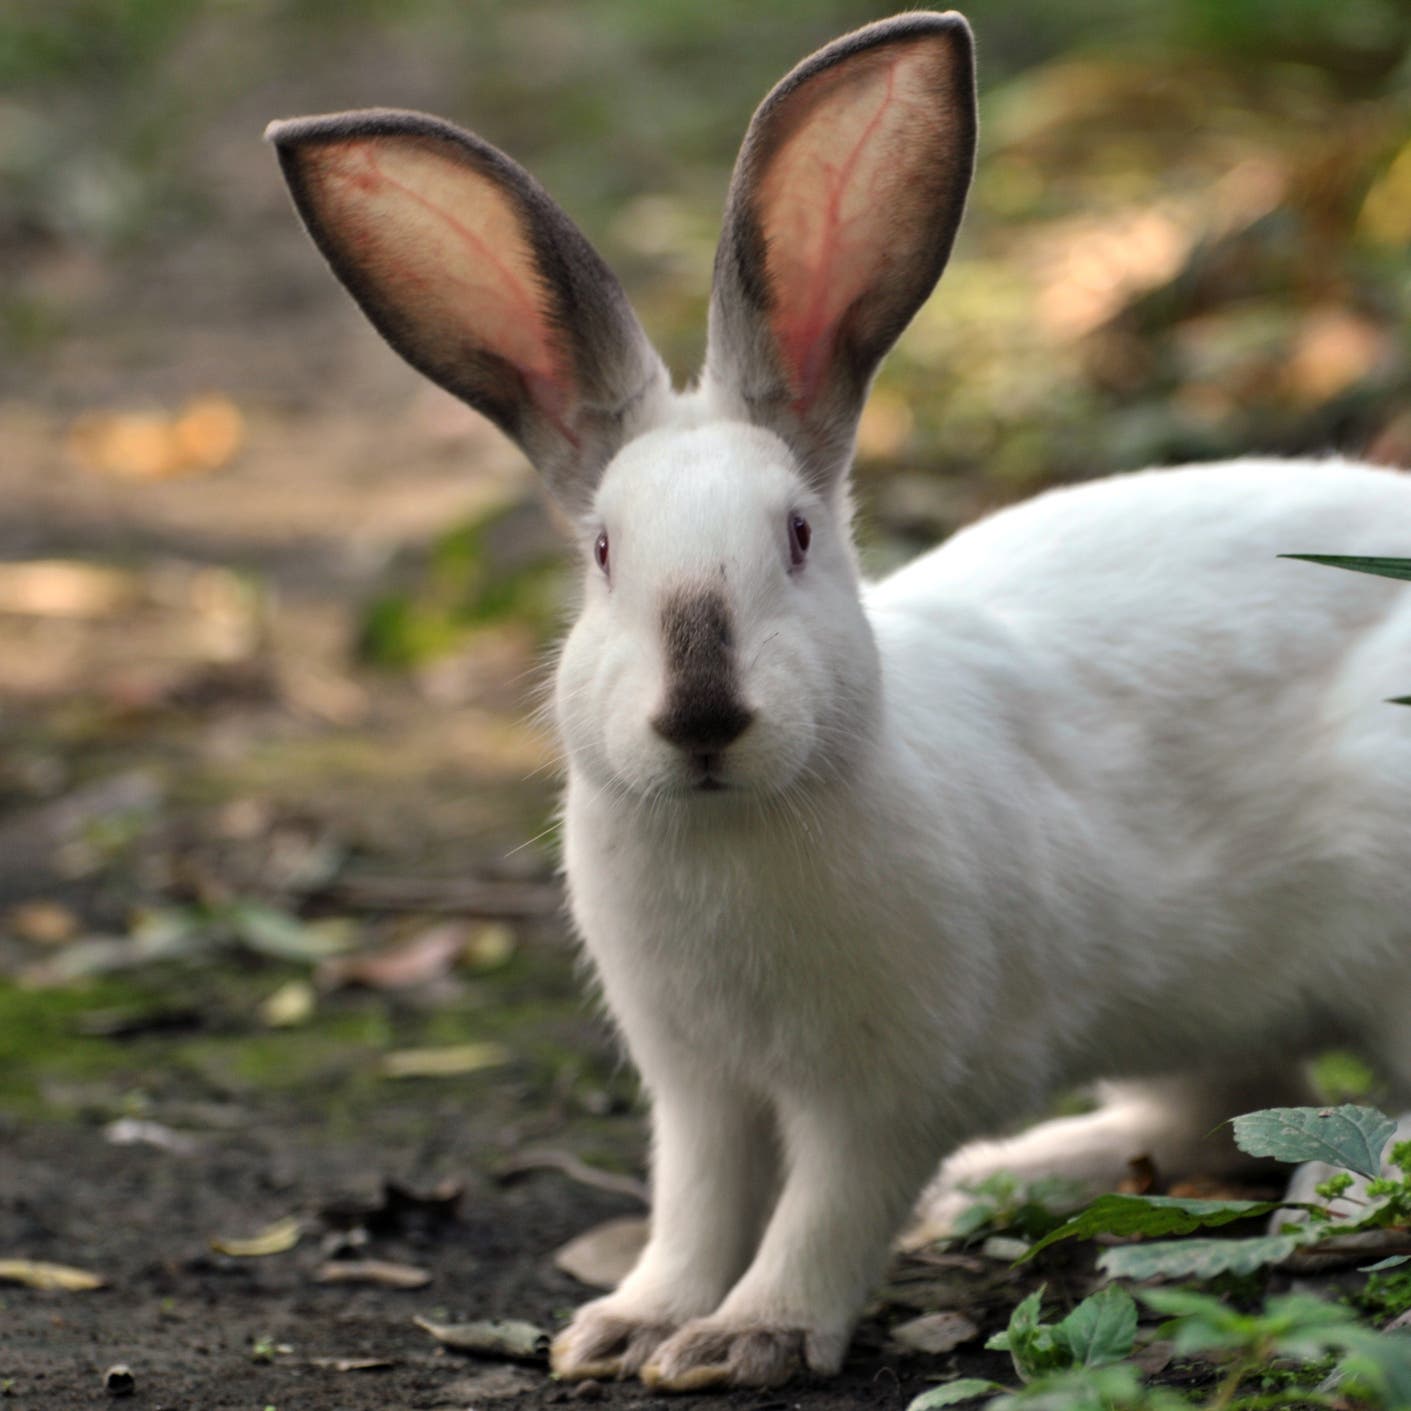 غرير النمس والأرانب.. بحث مفاجئ من الصحة العالمية بووهان